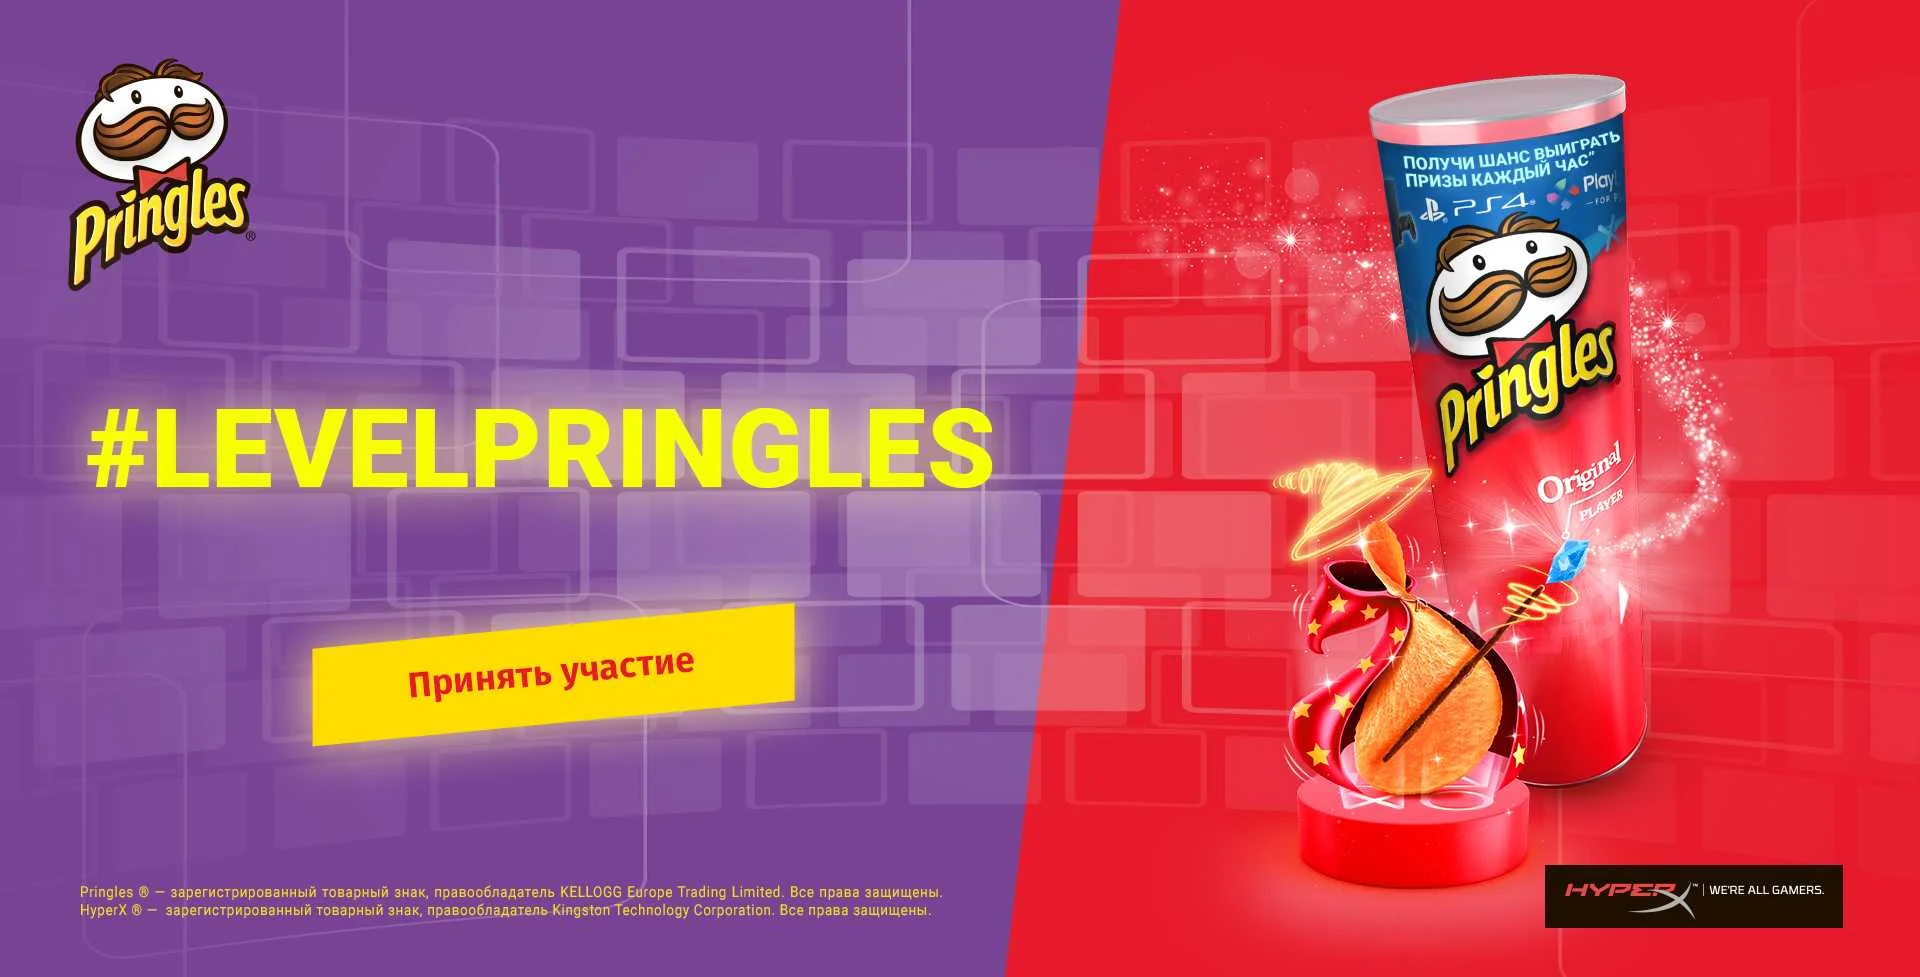 Наша акция с Pringles продлится до 10 апреля. Собери больше всего лайков и получи крутые призы! - фото 1